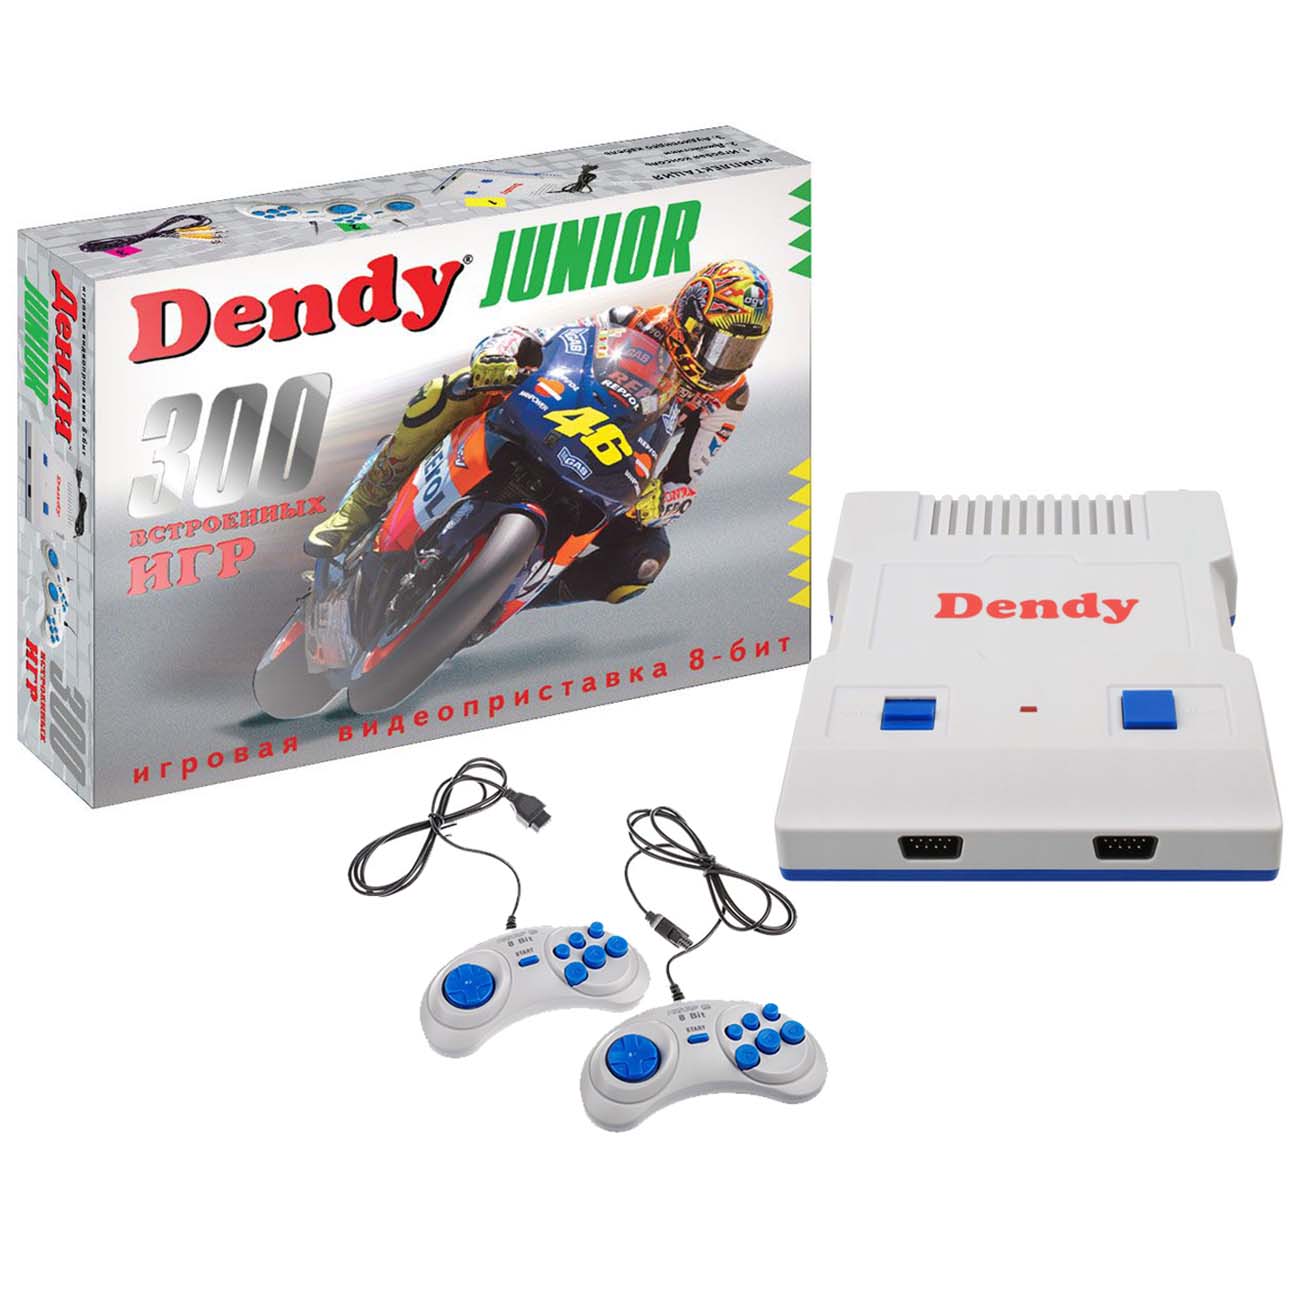 Денди приставка встроенные игры. Игровая консоль Dendy Junior - [300 игр]. Dendy Junior + 300 игр. Денди Джуниор 2 коробка. Приставка Денди GS 800.